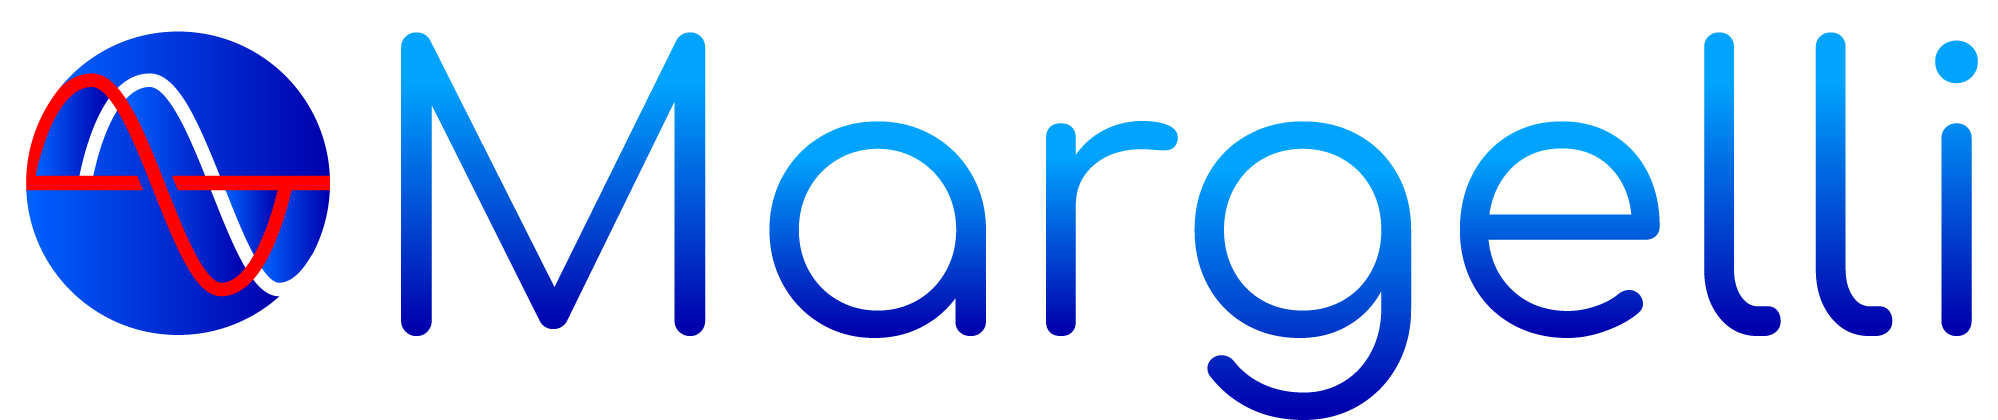 Offical-Logo